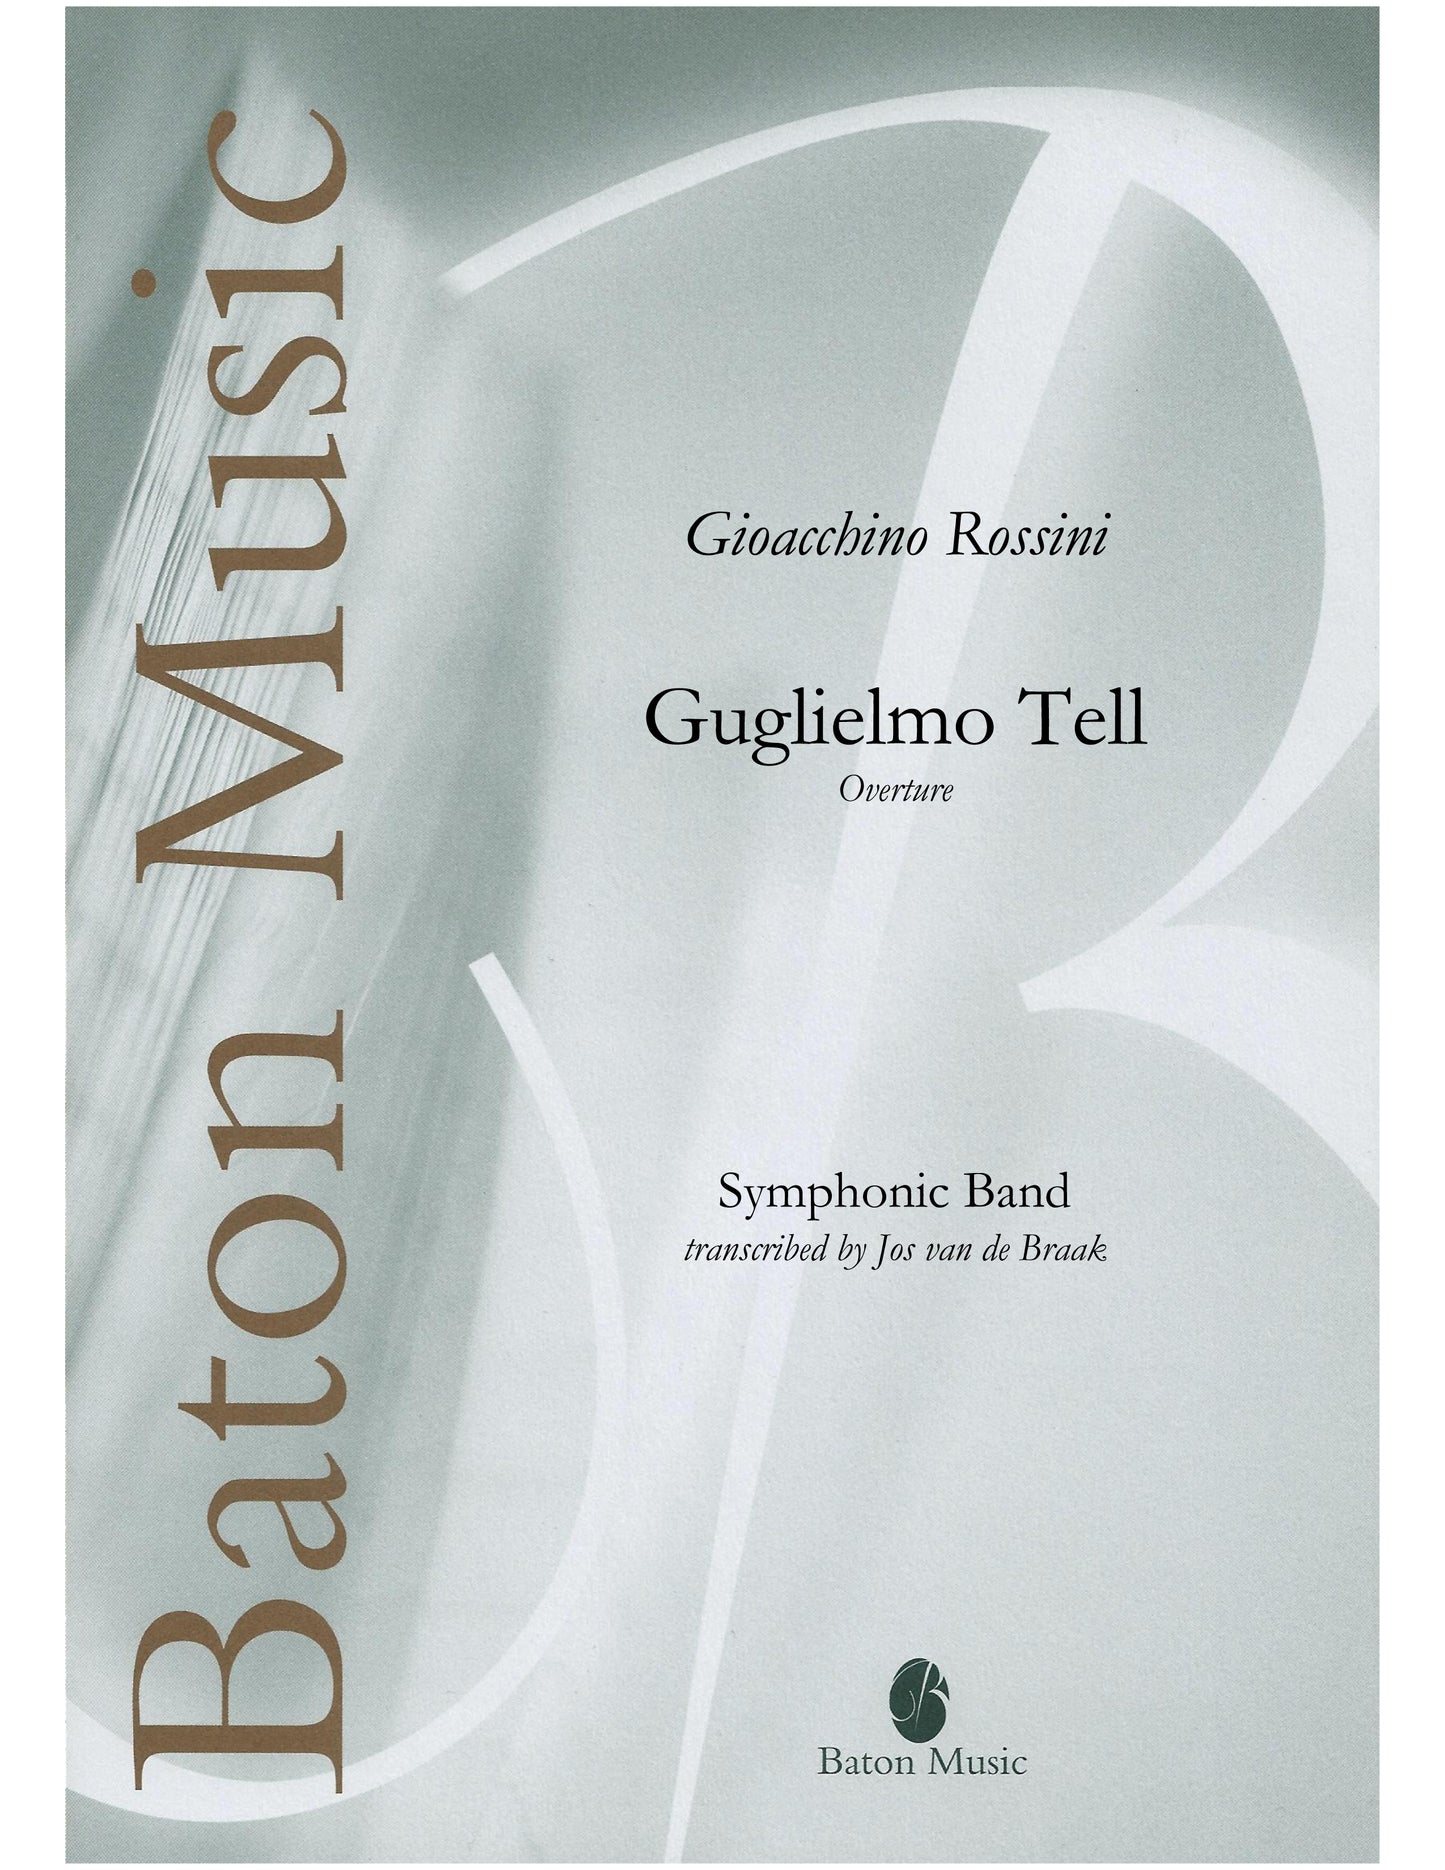 William Tell (Overture) - G. Rossini